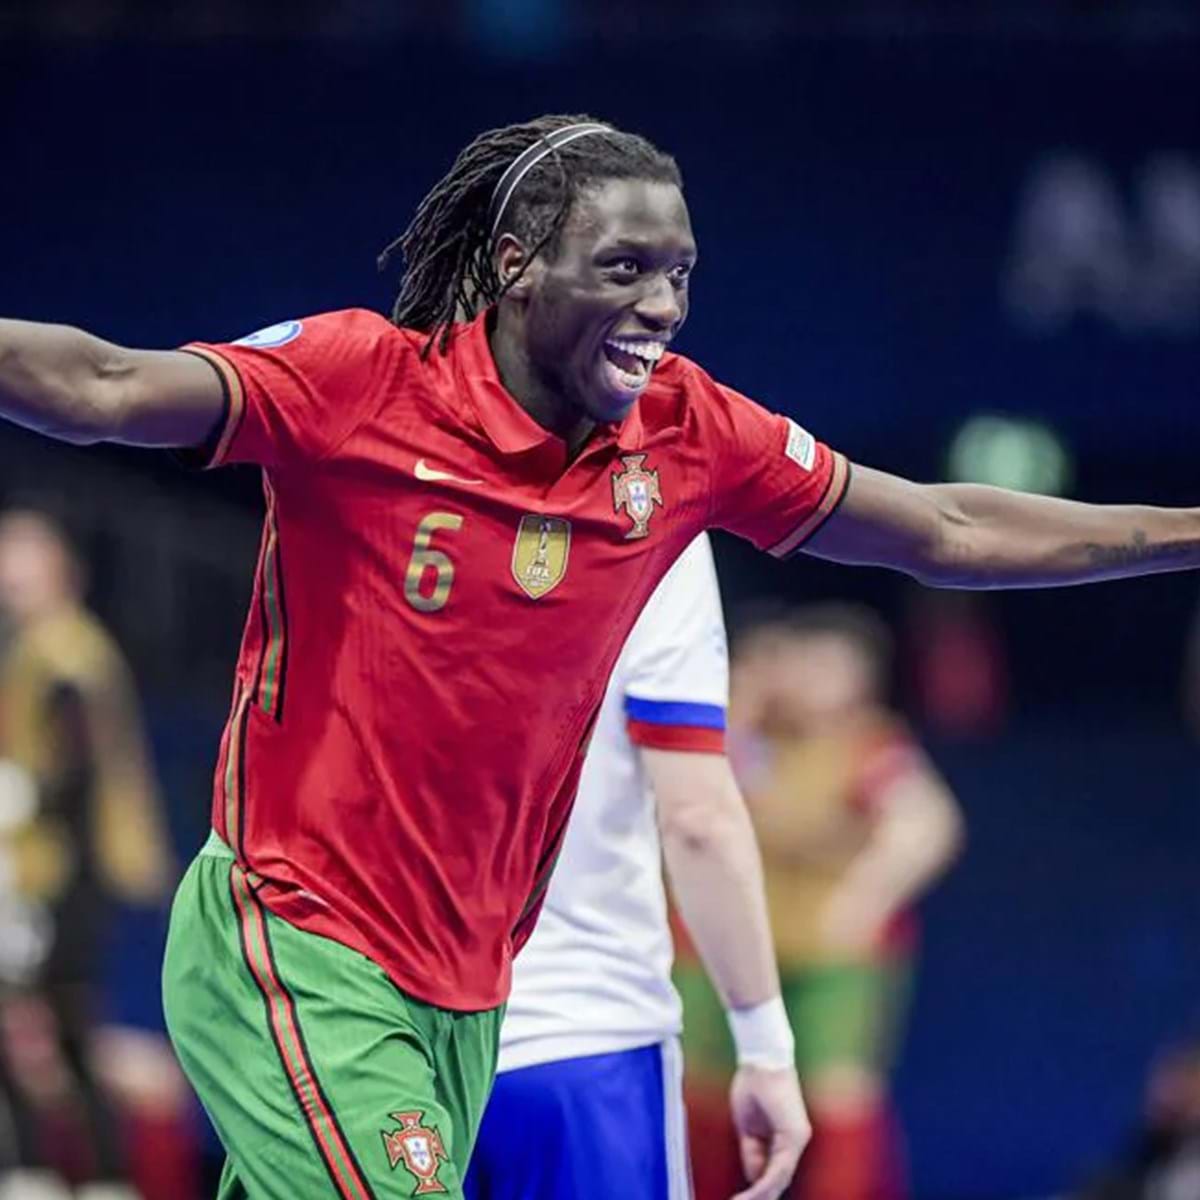 Europeu de futsal: Zicky Té eleito melhor jogador do torneio - CNN Portugal